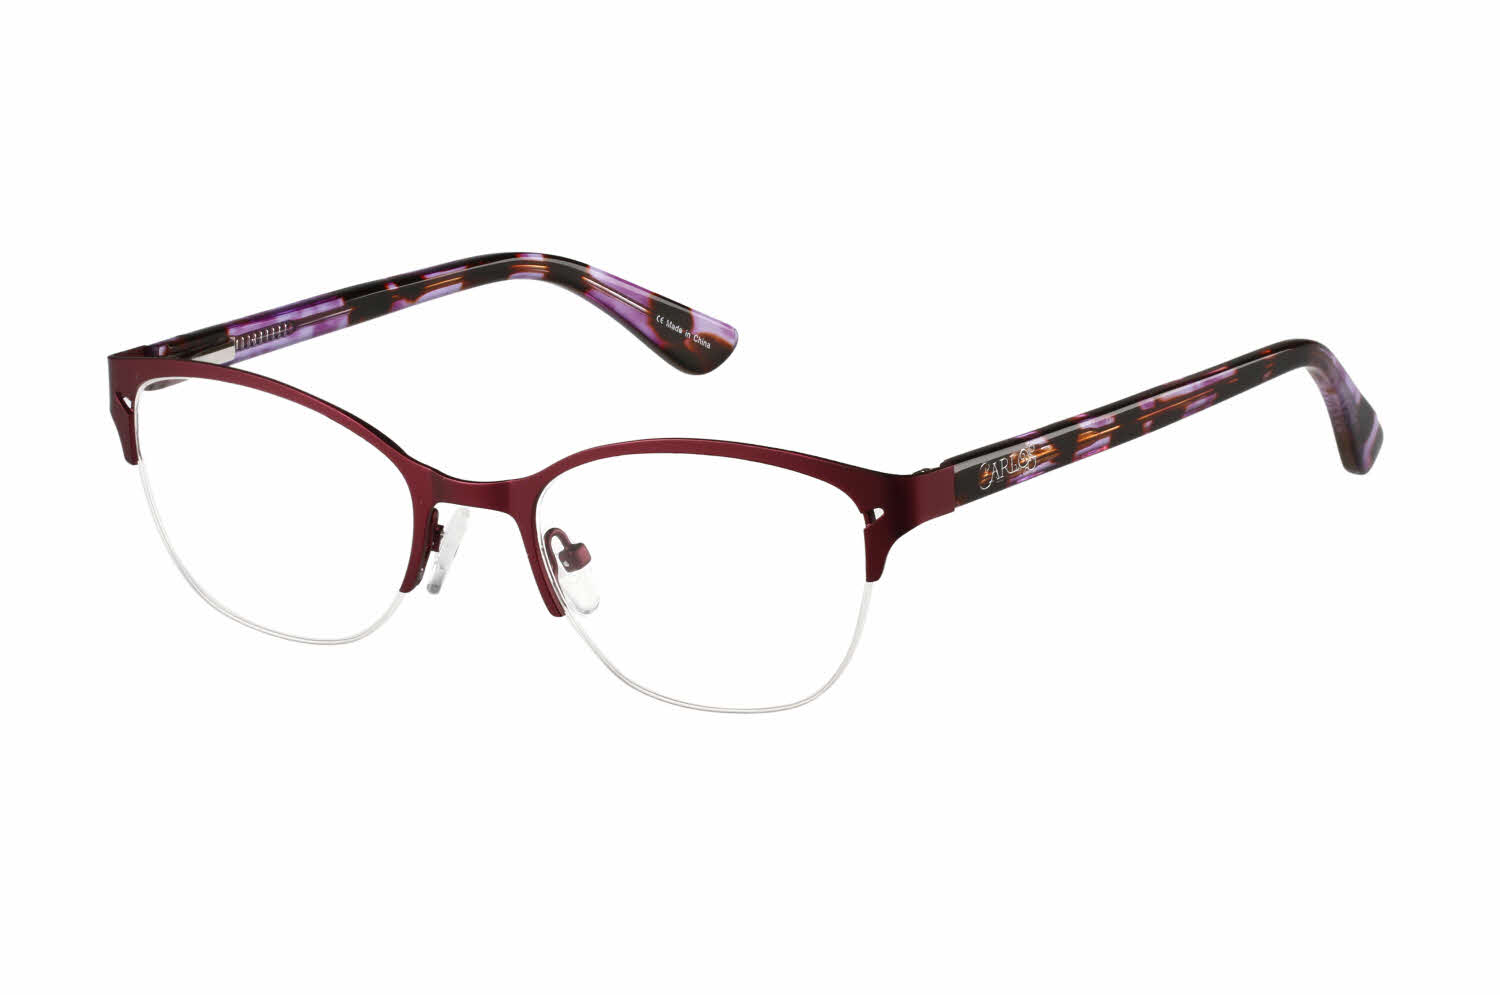 Carlos By Carlos Santana CLS 06 Women's Eyeglasses In Purple